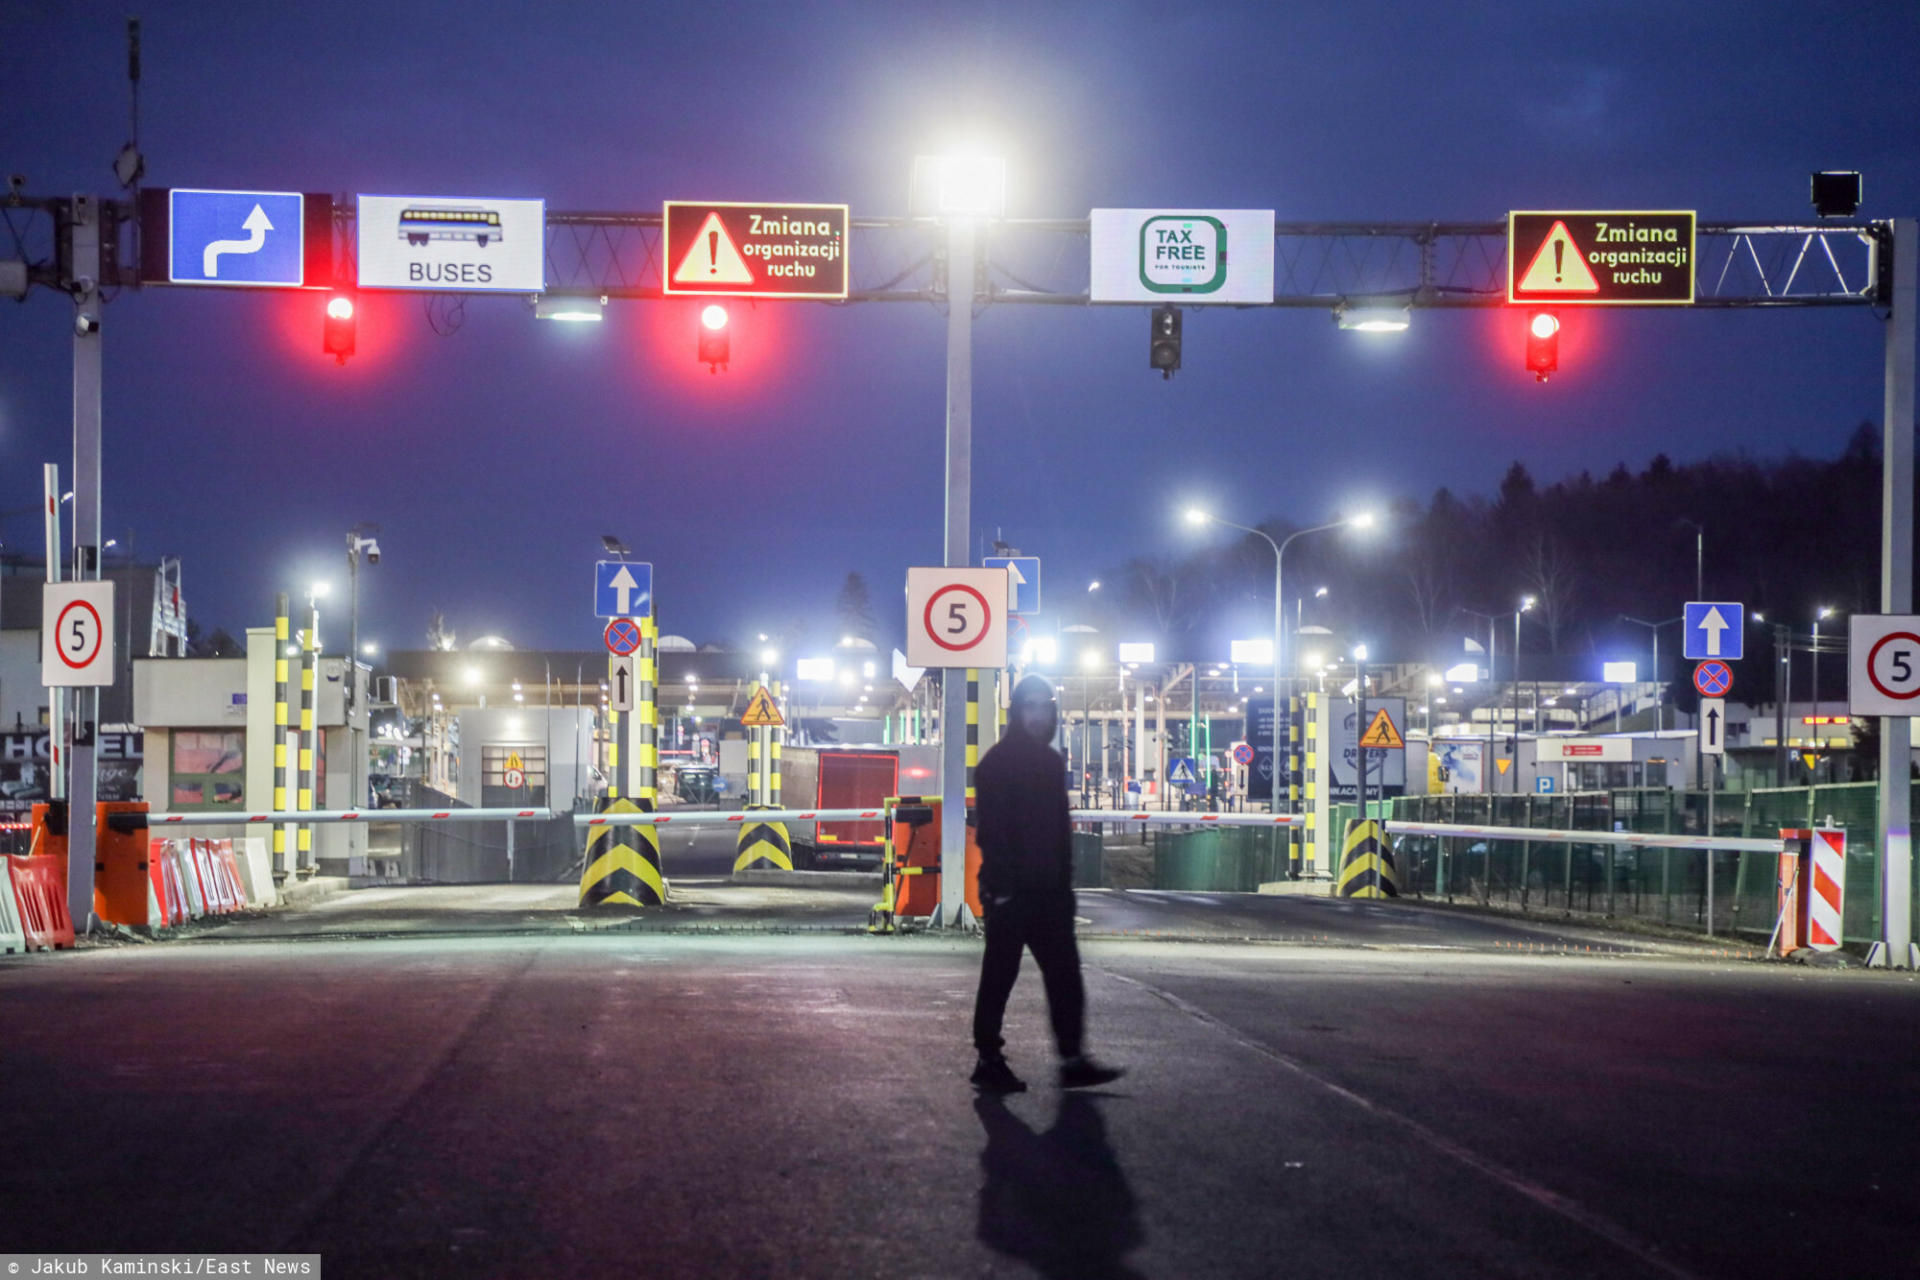 Straż Graniczna: "Nikt nie może ani wjechać, ani wyjechać z Polski"